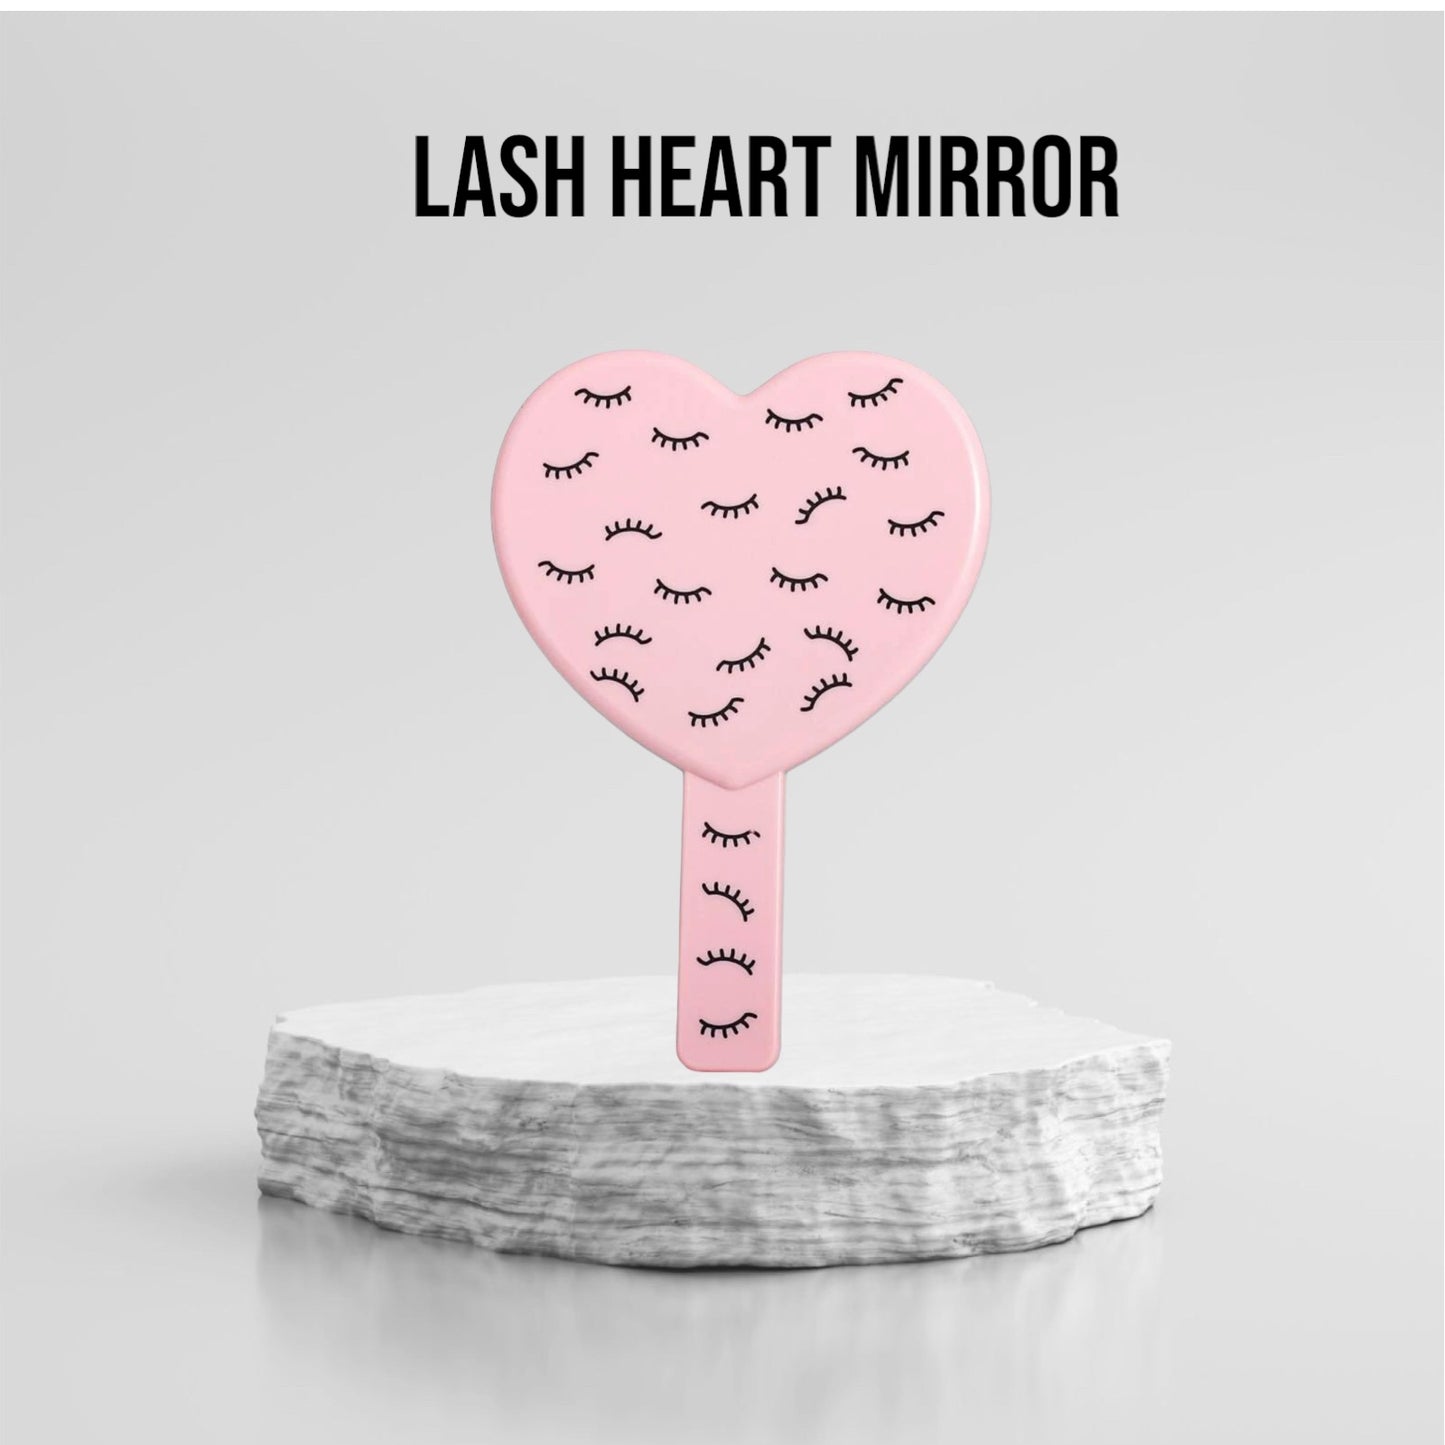 Lash Heart Mirror